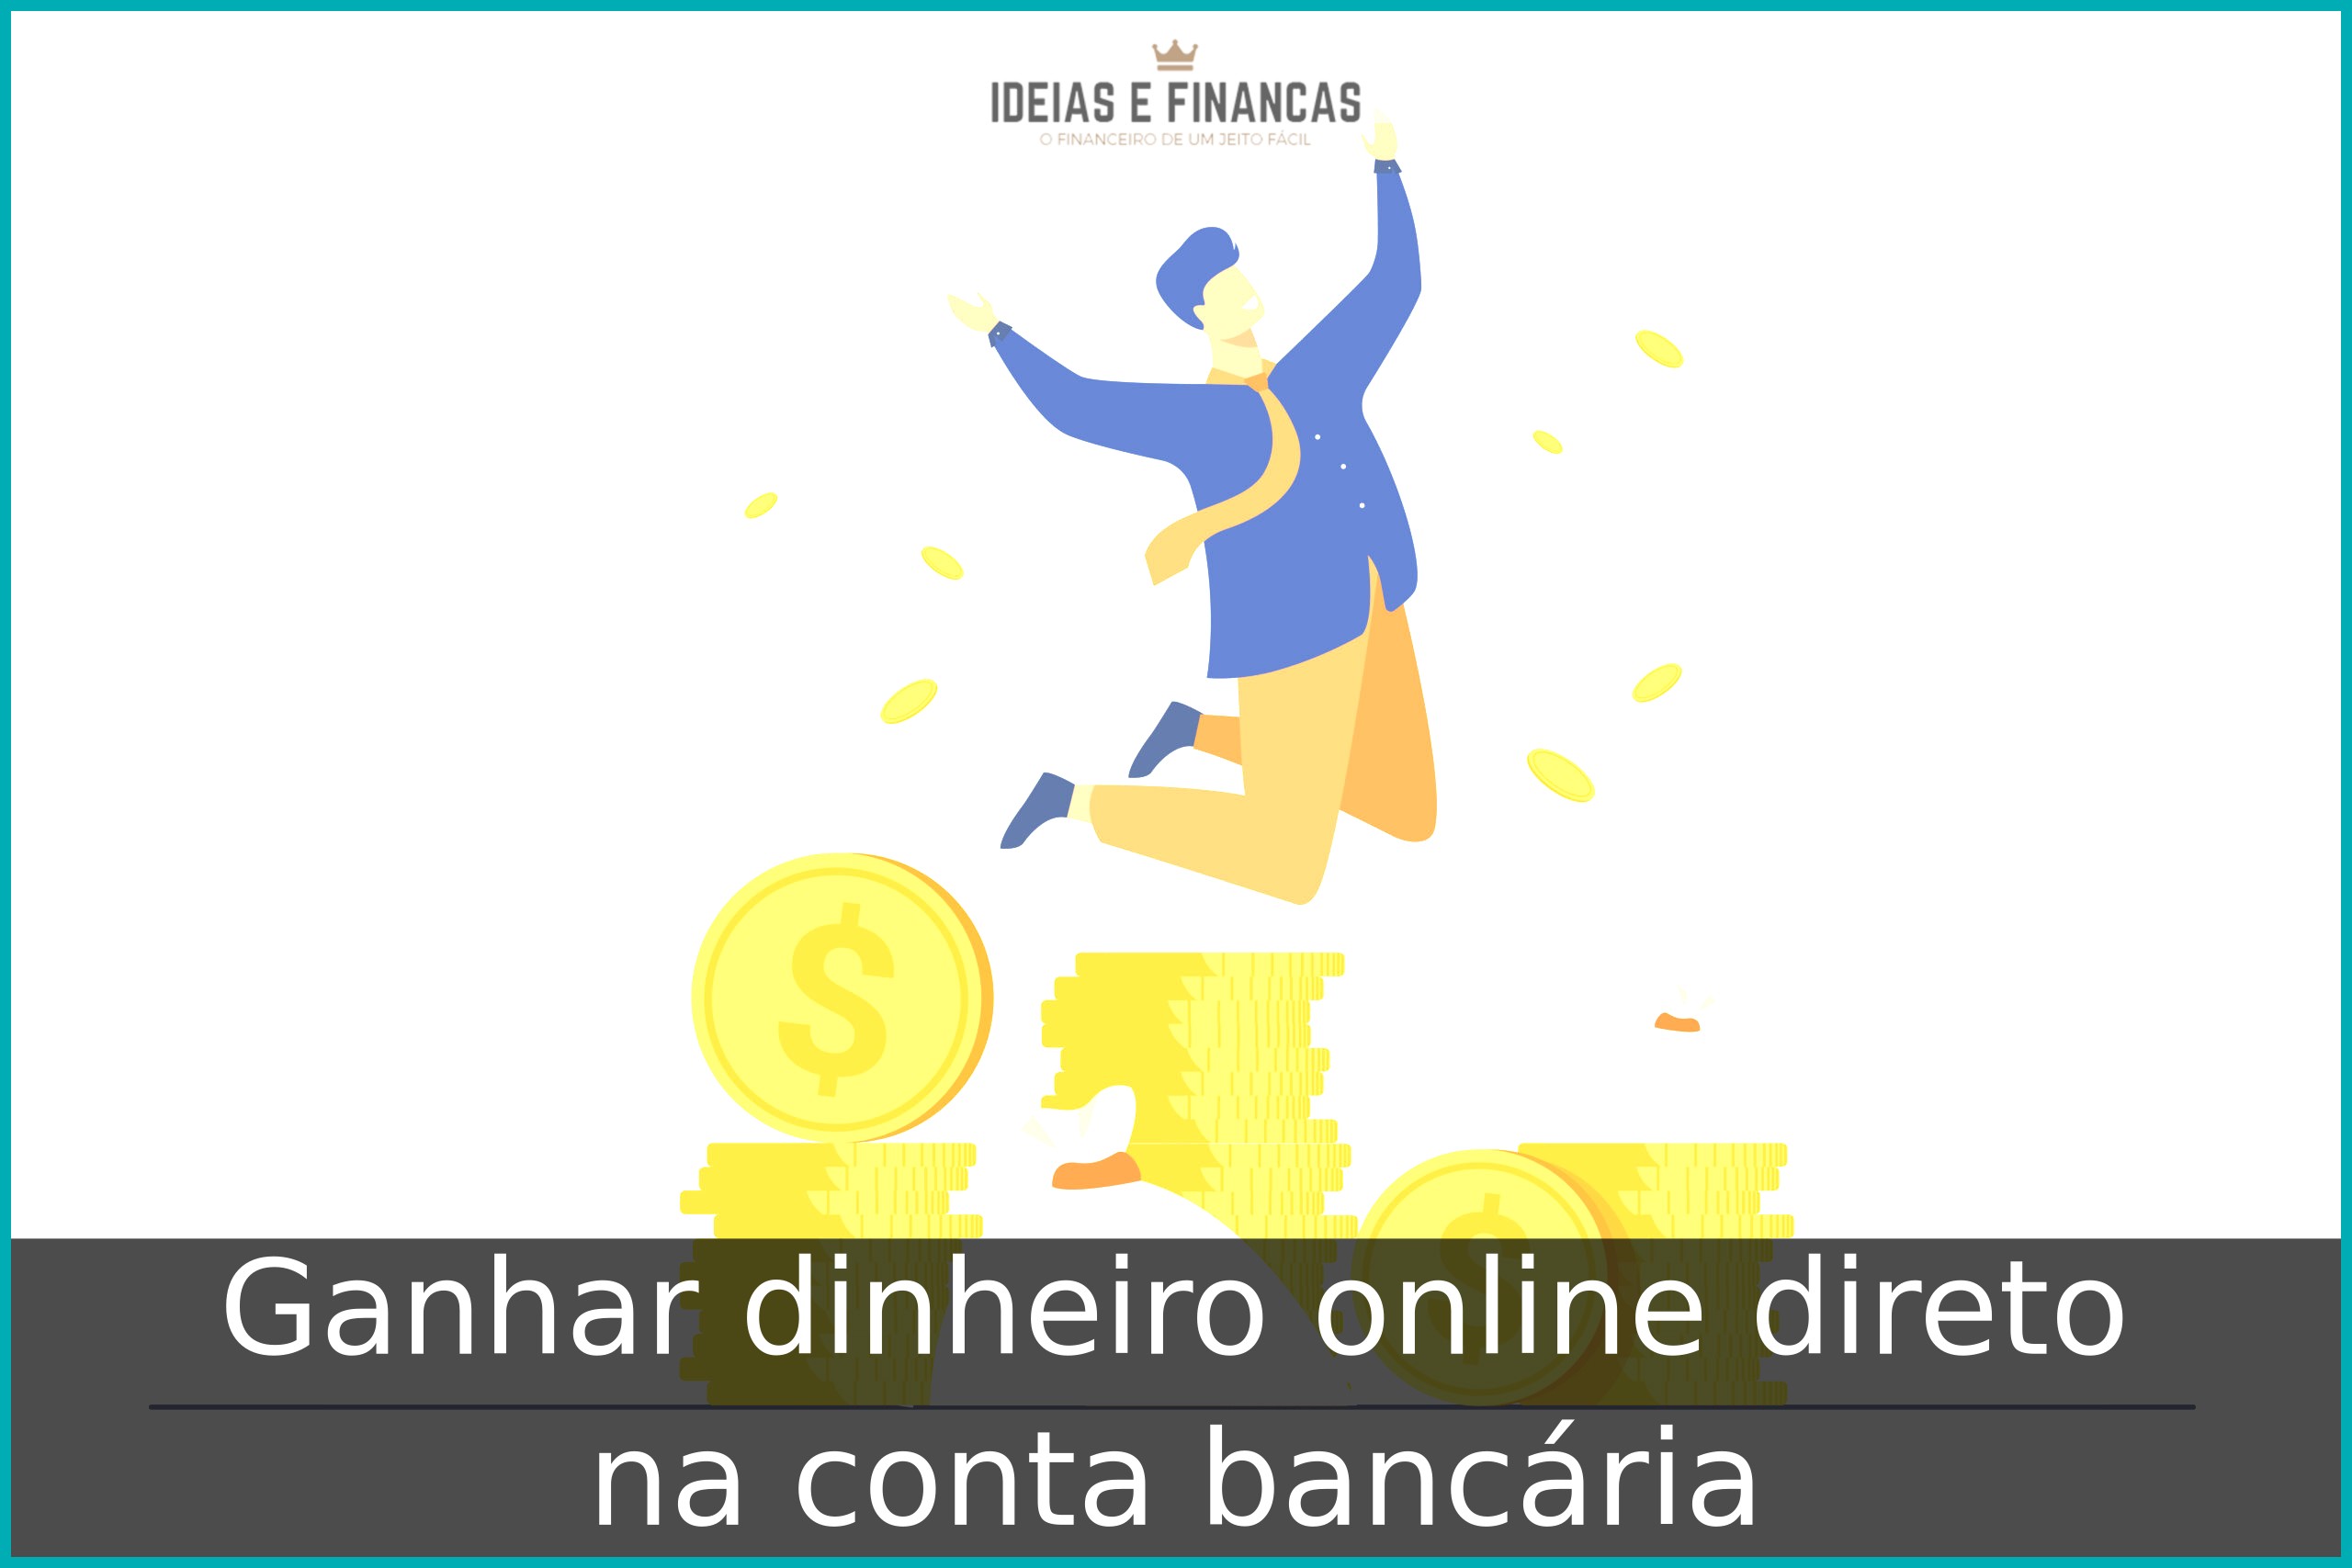 Ganhar dinheiro online direto na conta bancária